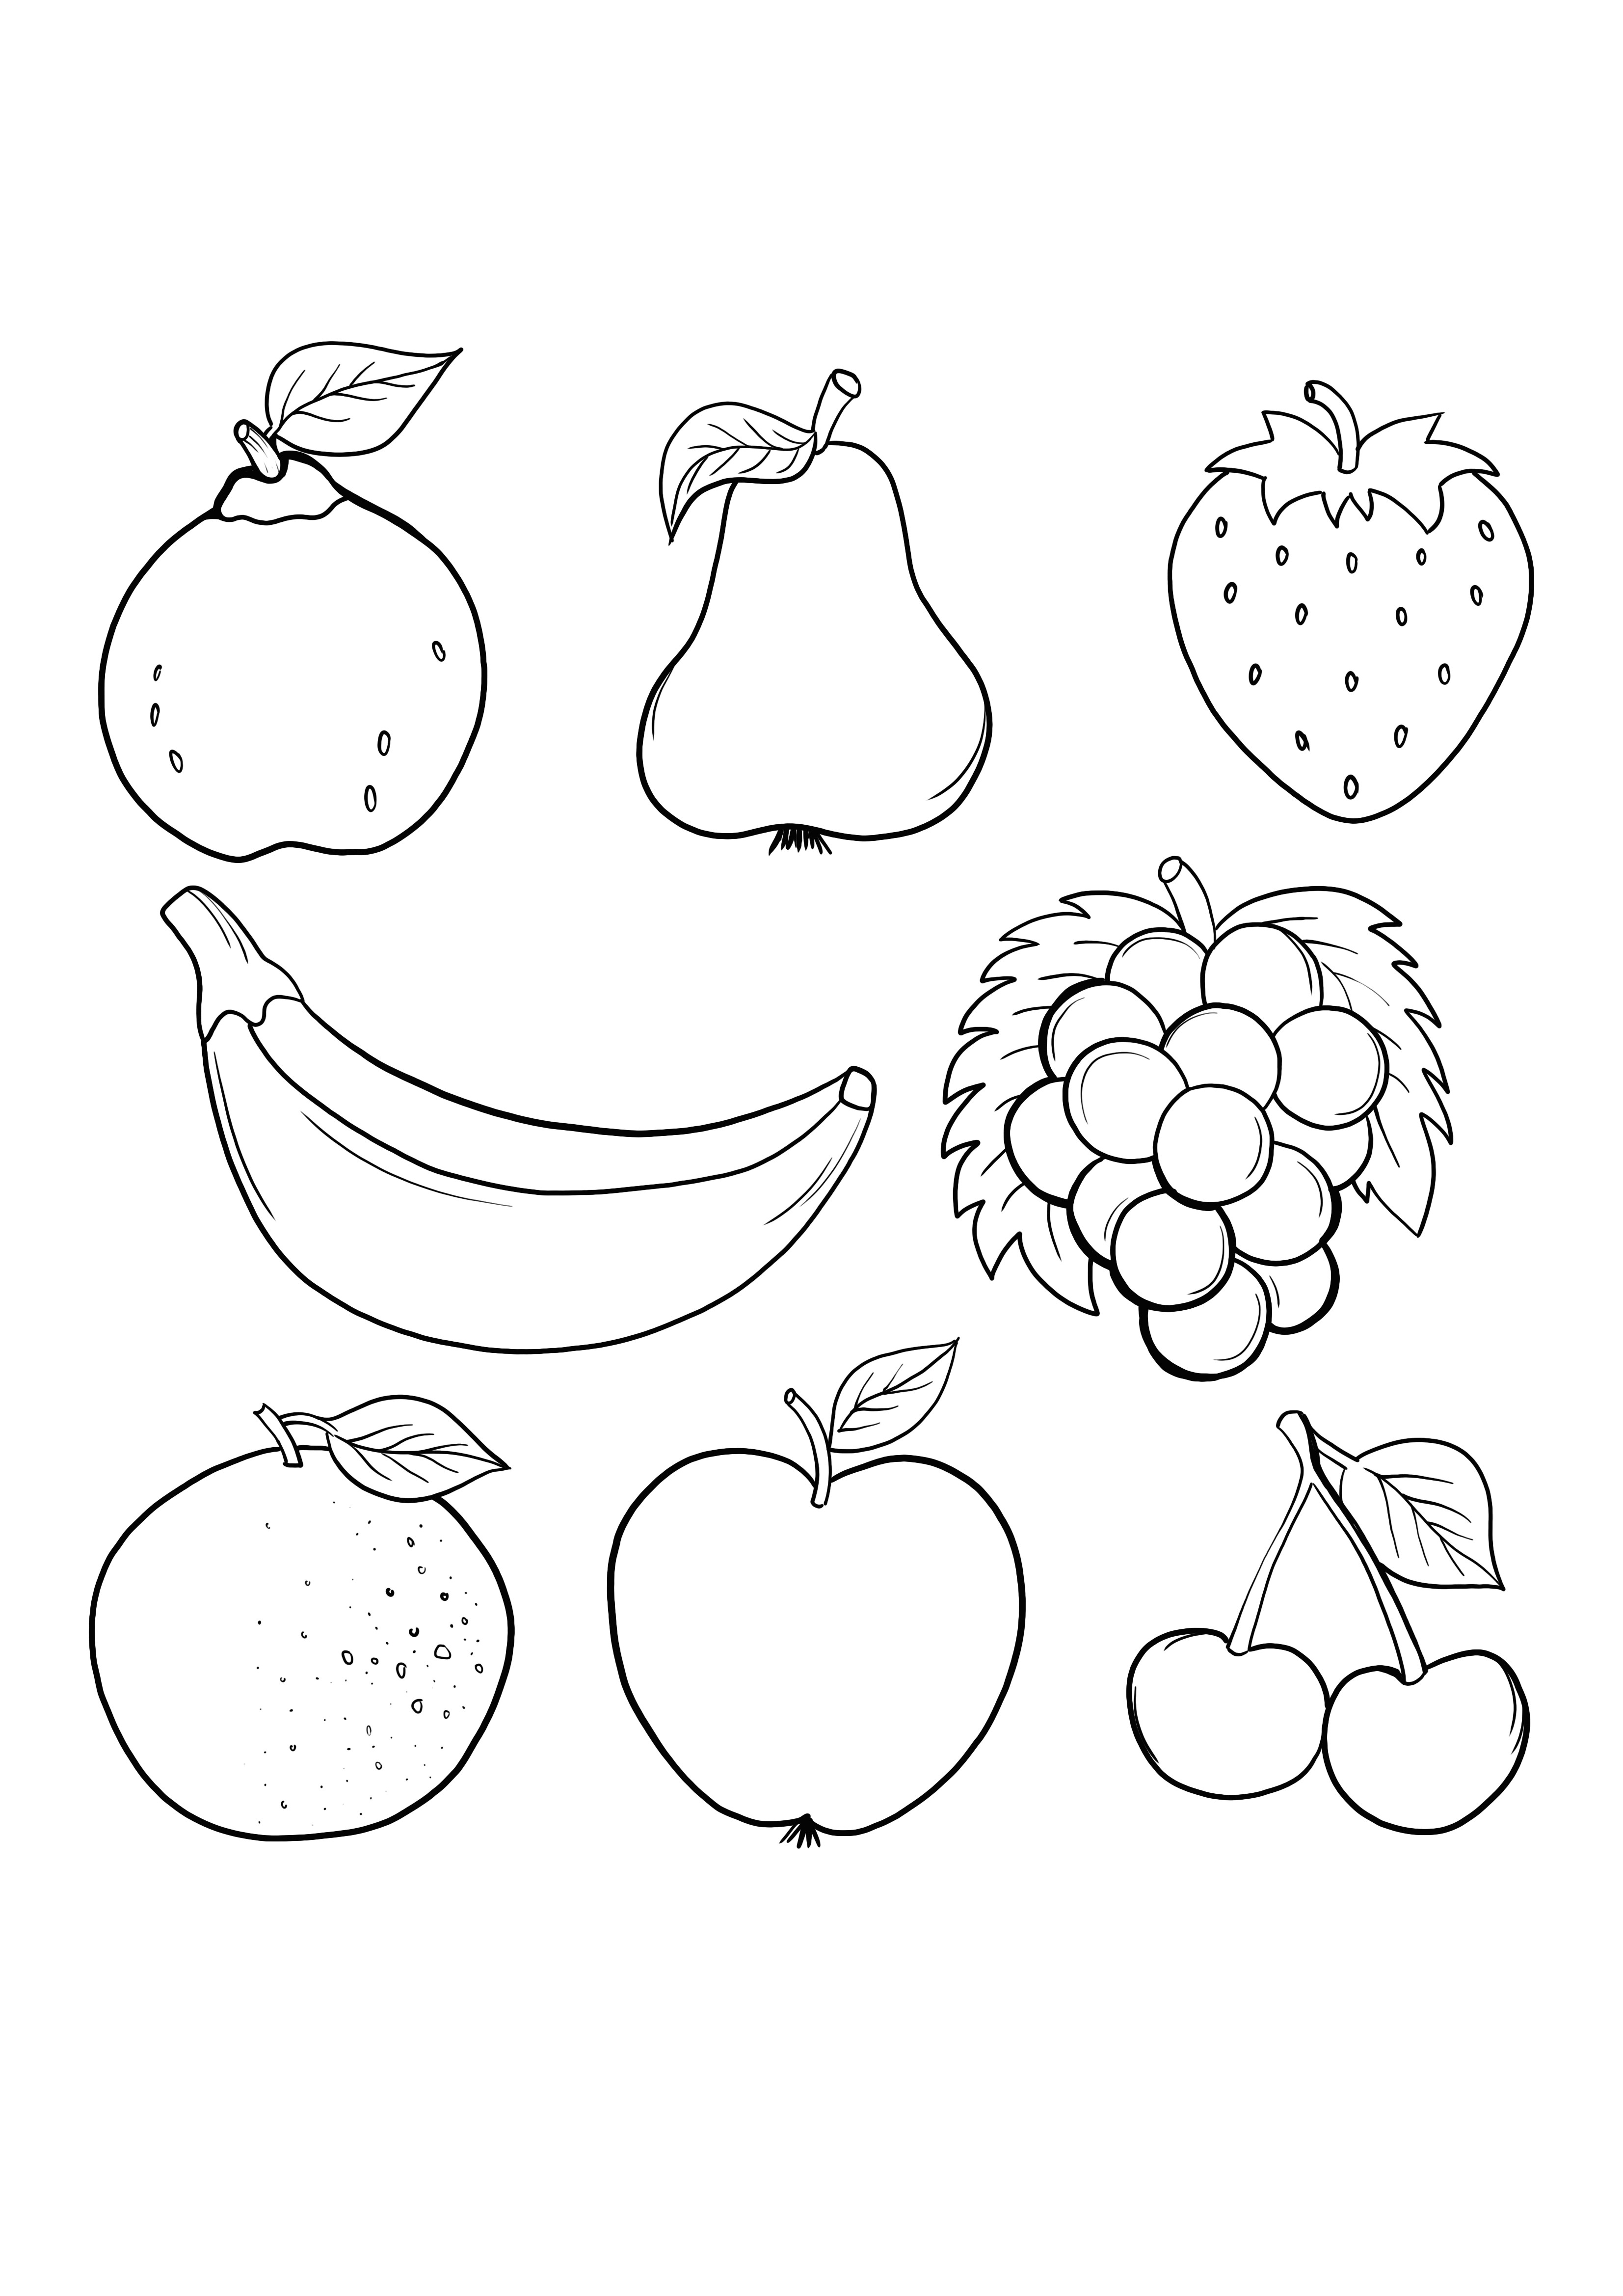 Disegni da colorare di frutti casuali da stampare gratuitamente